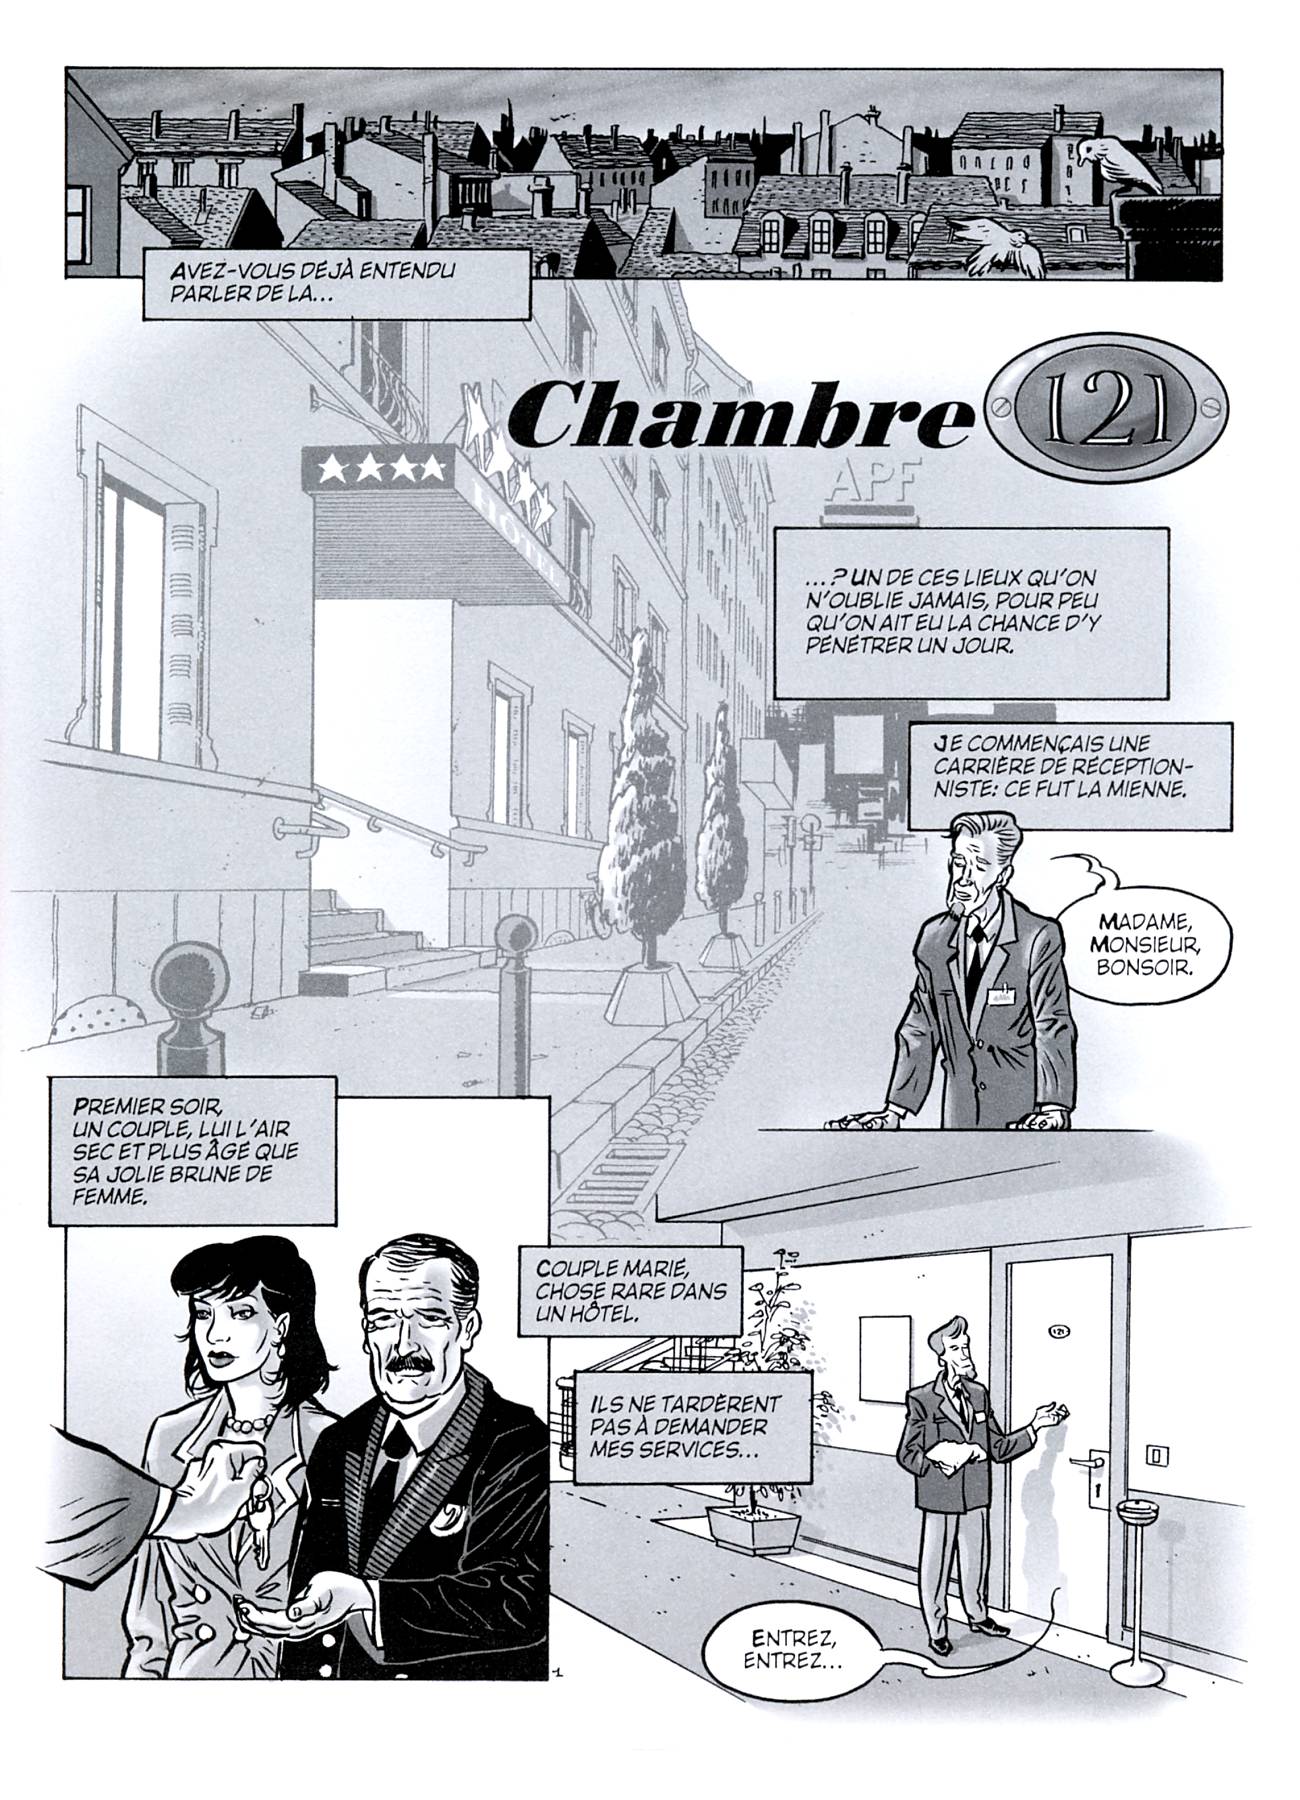 Internationalcomix - Chambre 121